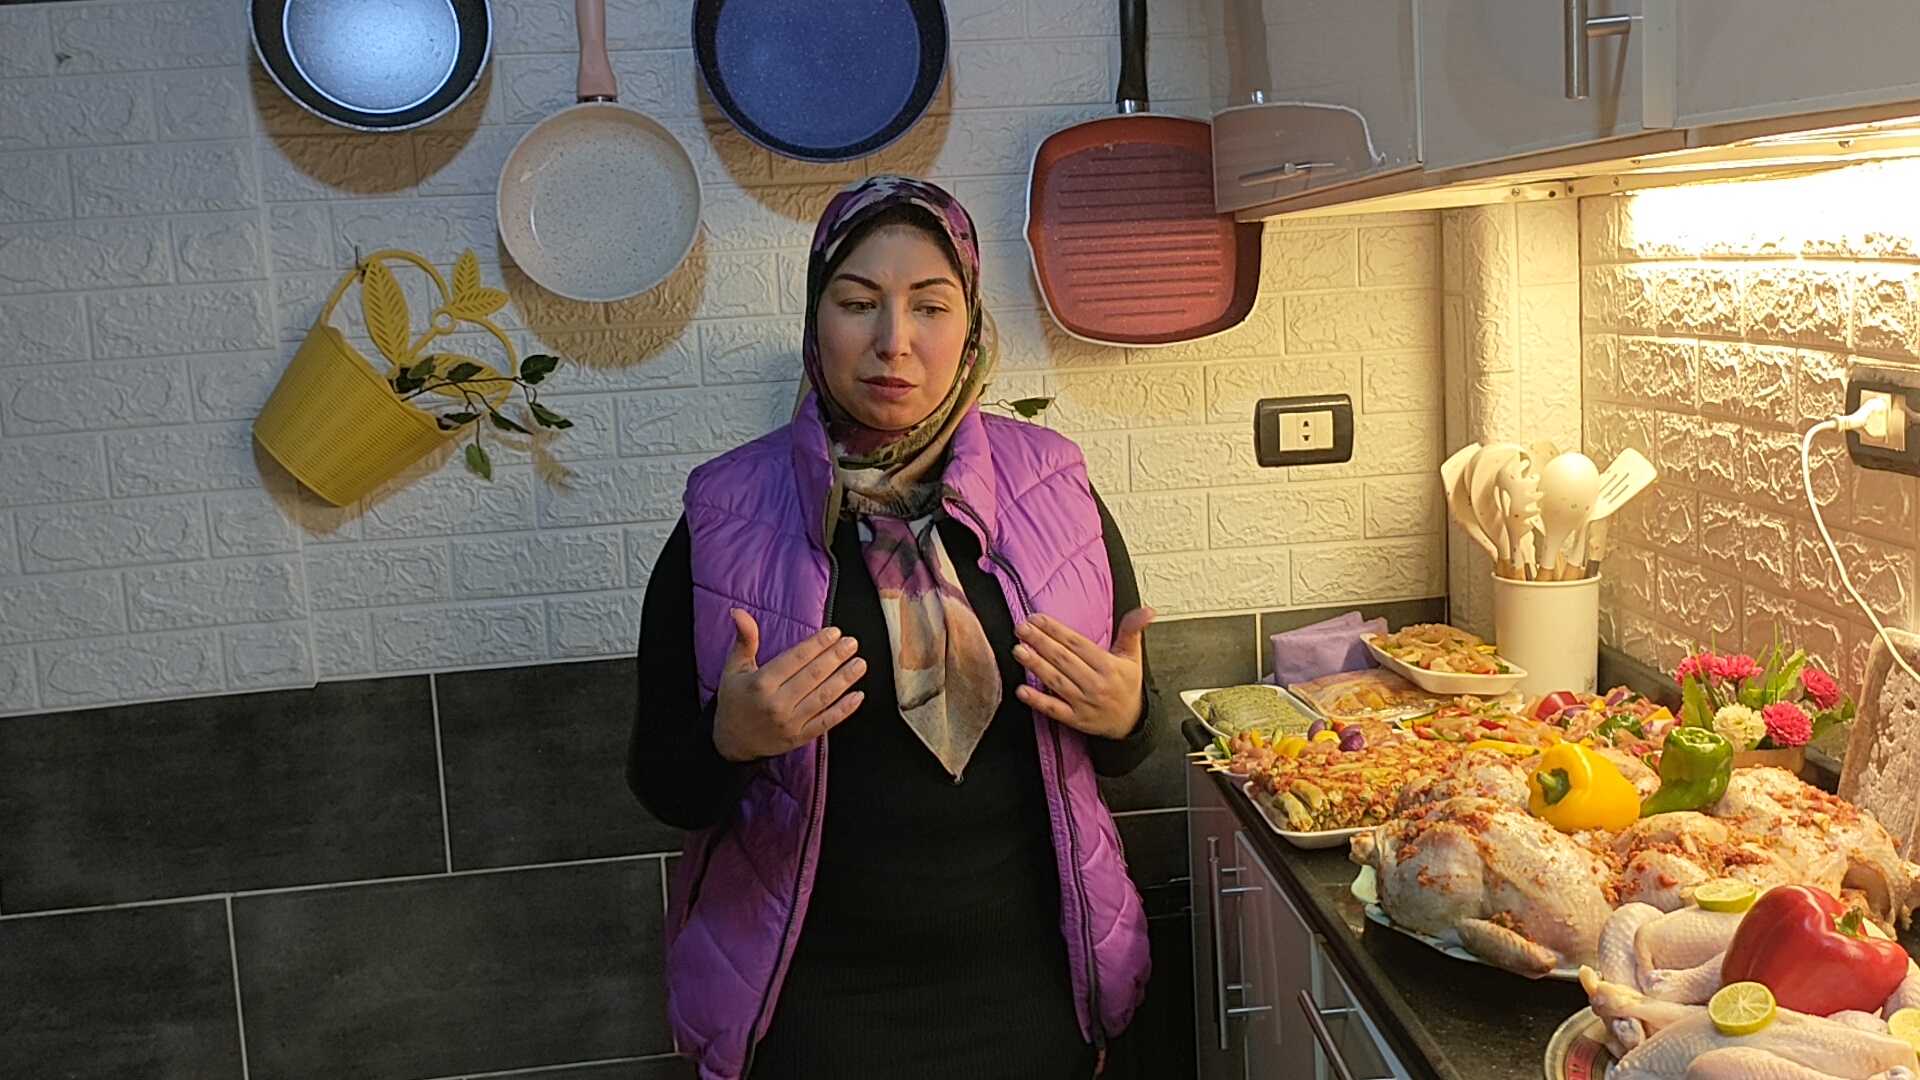 مريم فتاة من الغربية تطلق مبادرة إطعام الطعام